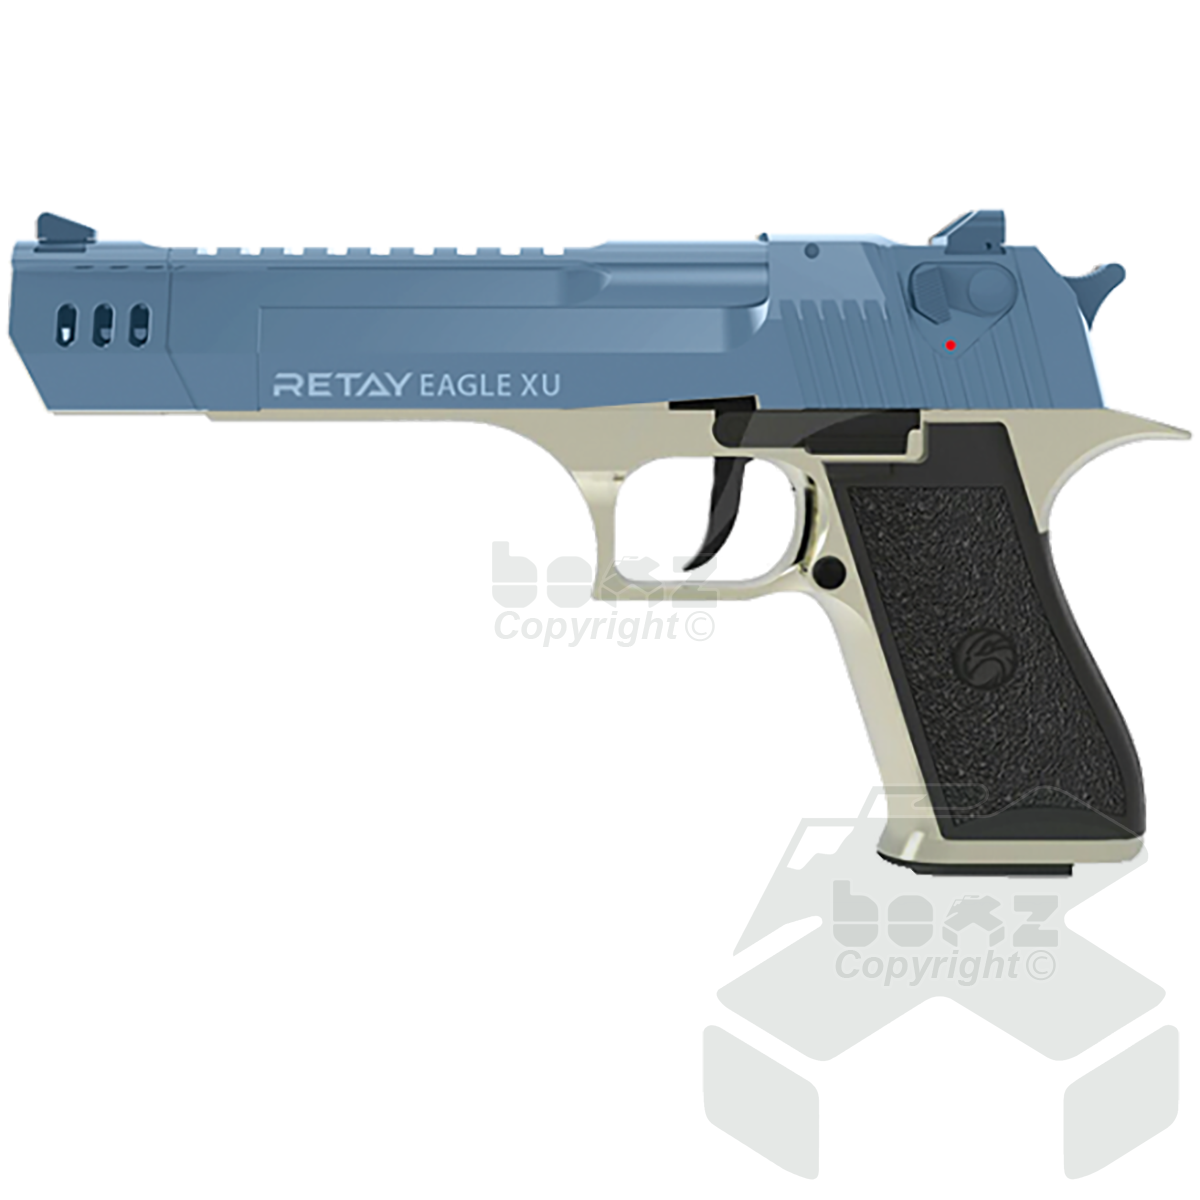 Retay EagleXU Blank Firing Pistol - 9mm - Satin